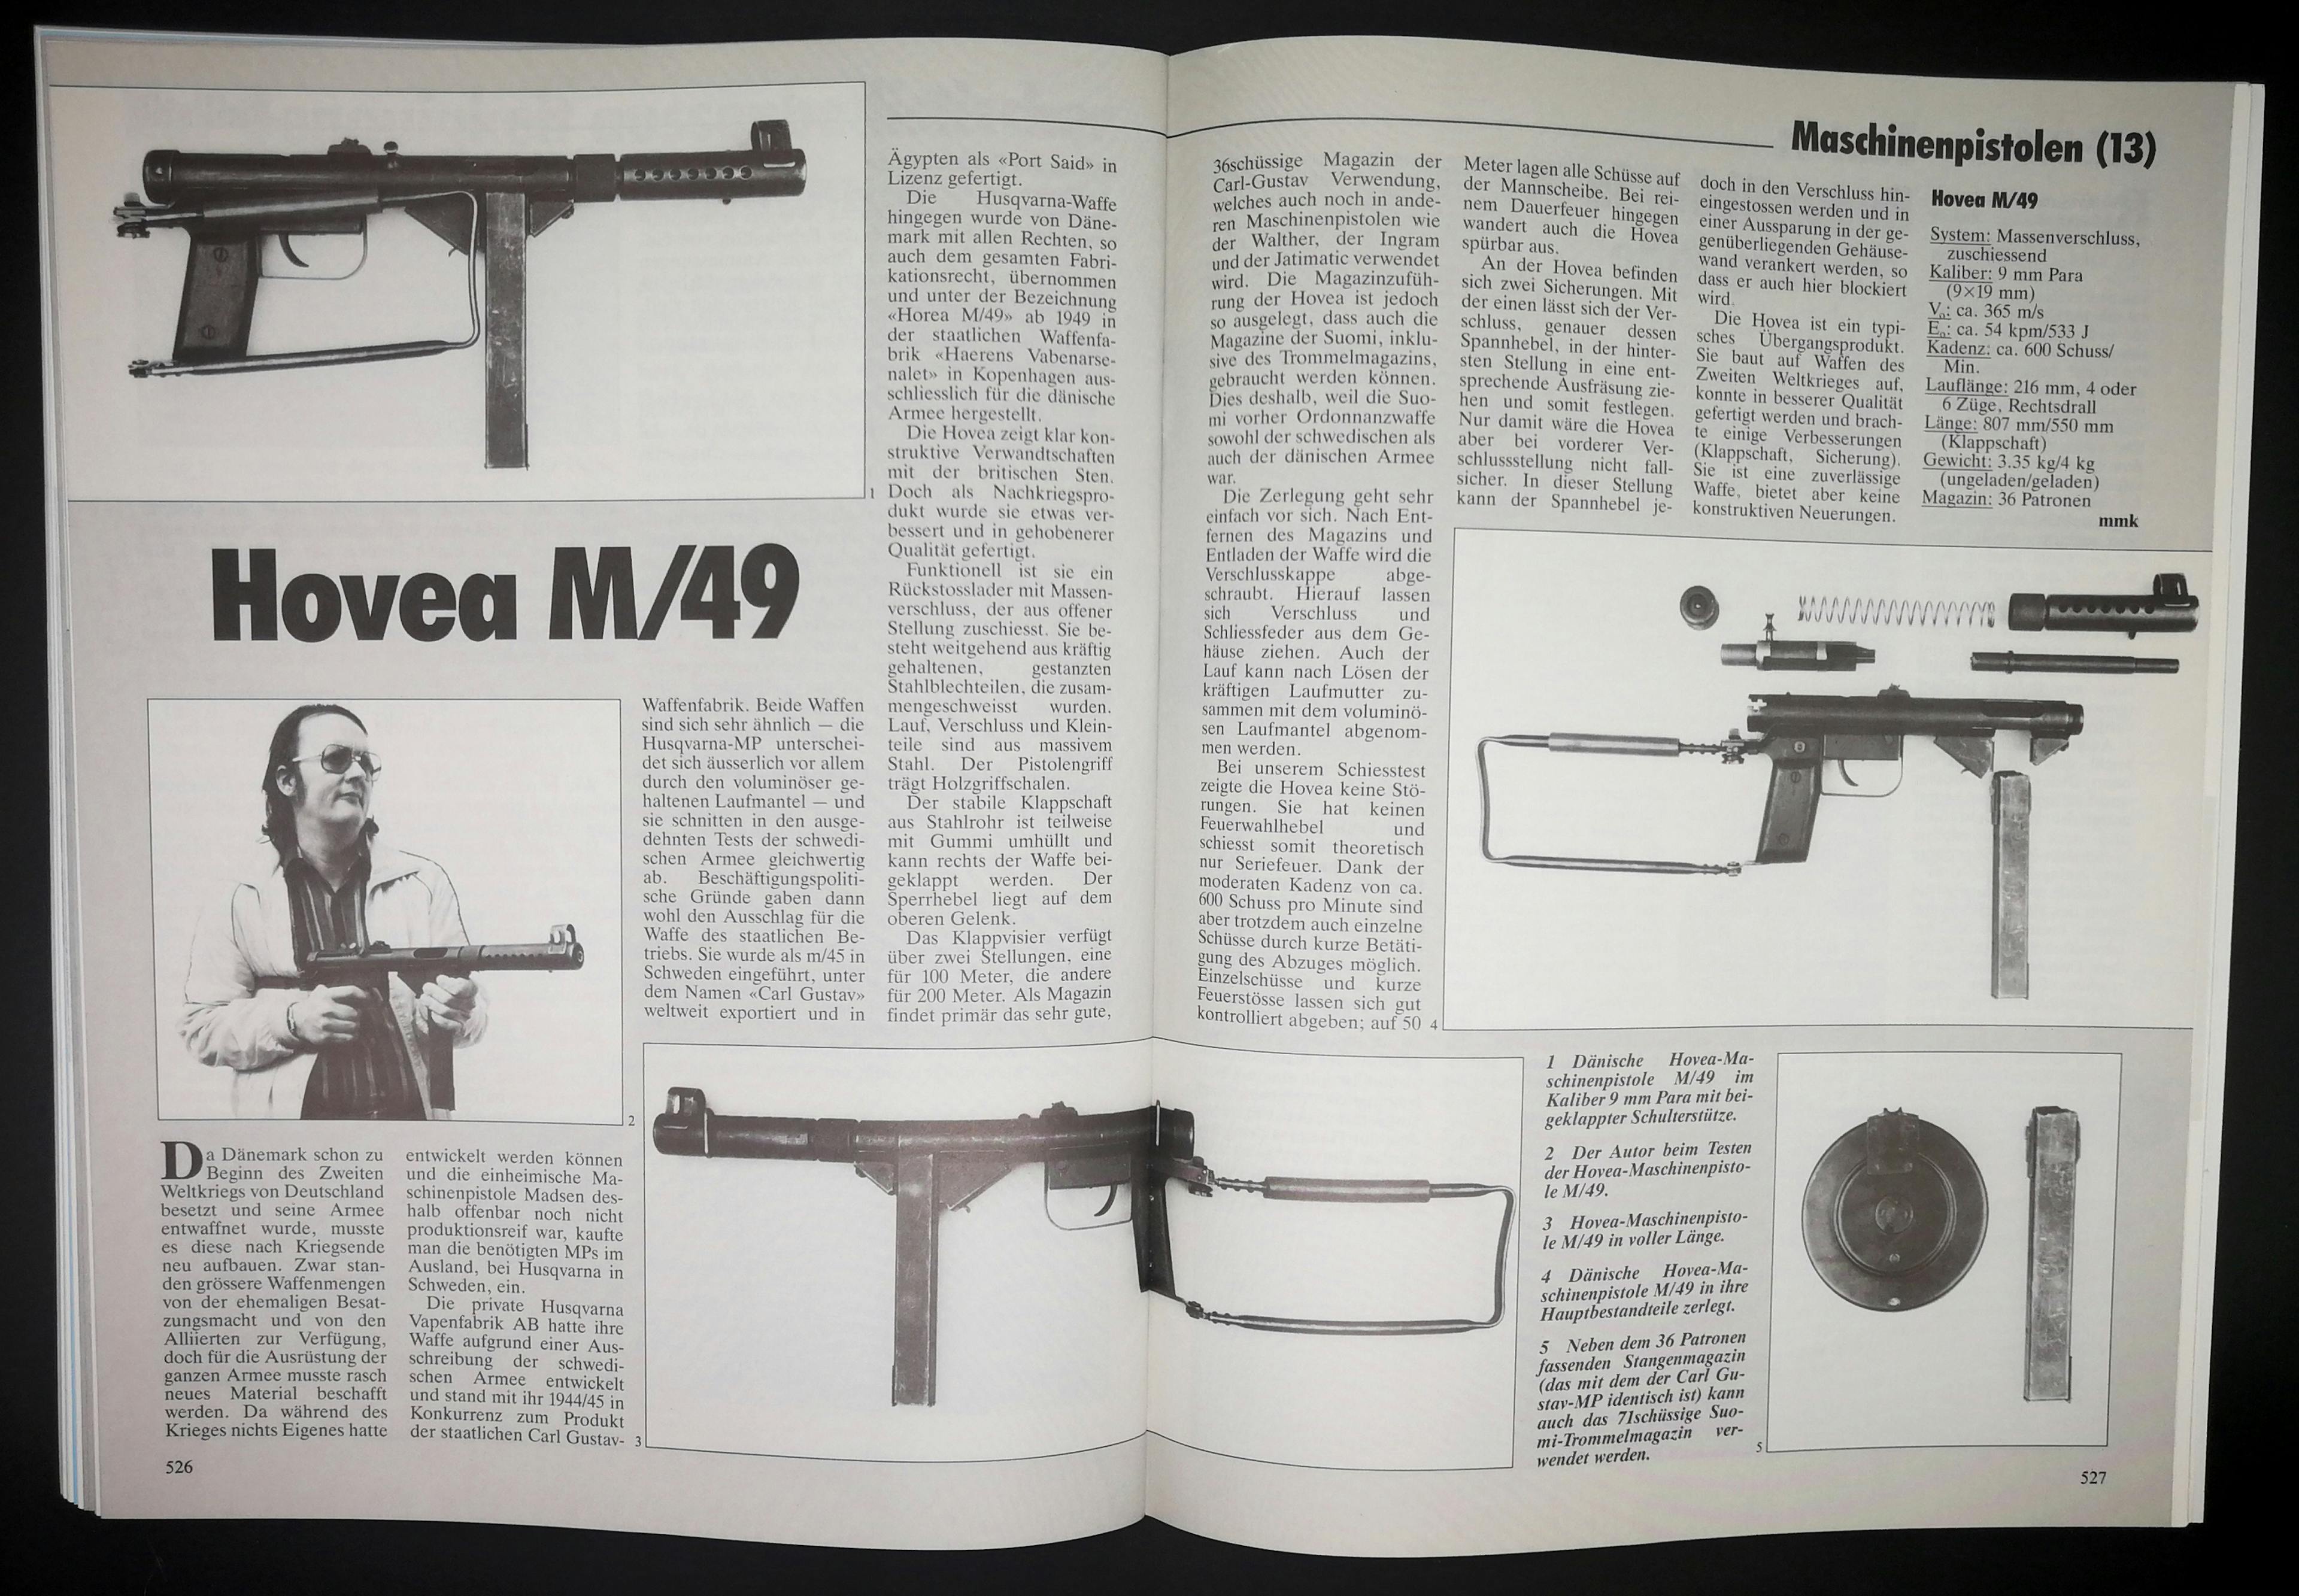 Das SWM stellt regelmässig Maschinenpistolen vor - manche bekannter als andere. Dänische Hovea M/49, eigentlich von Husqvarna.
